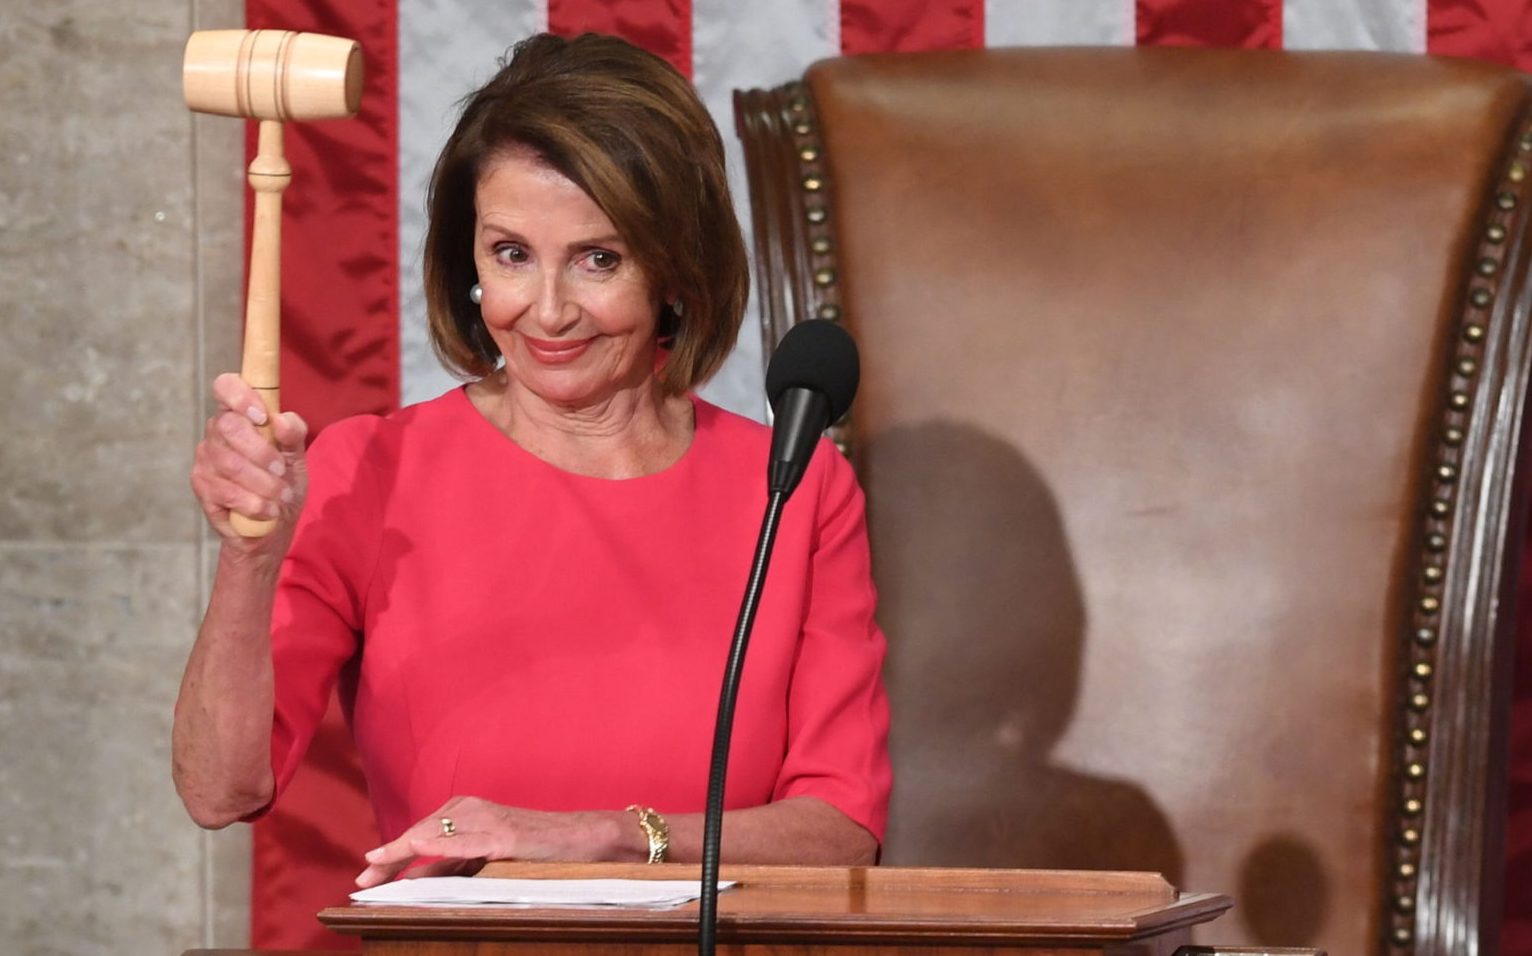 Bà Nancy Pelosi, chủ tịch Hạ Viện Hoa Kỳ, dự tính thăm Đài Loan, làm cho cả Bắc Kinh và Washington “nhức đầu.” Ảnh: Saul Loeb/AFP via Getty Images